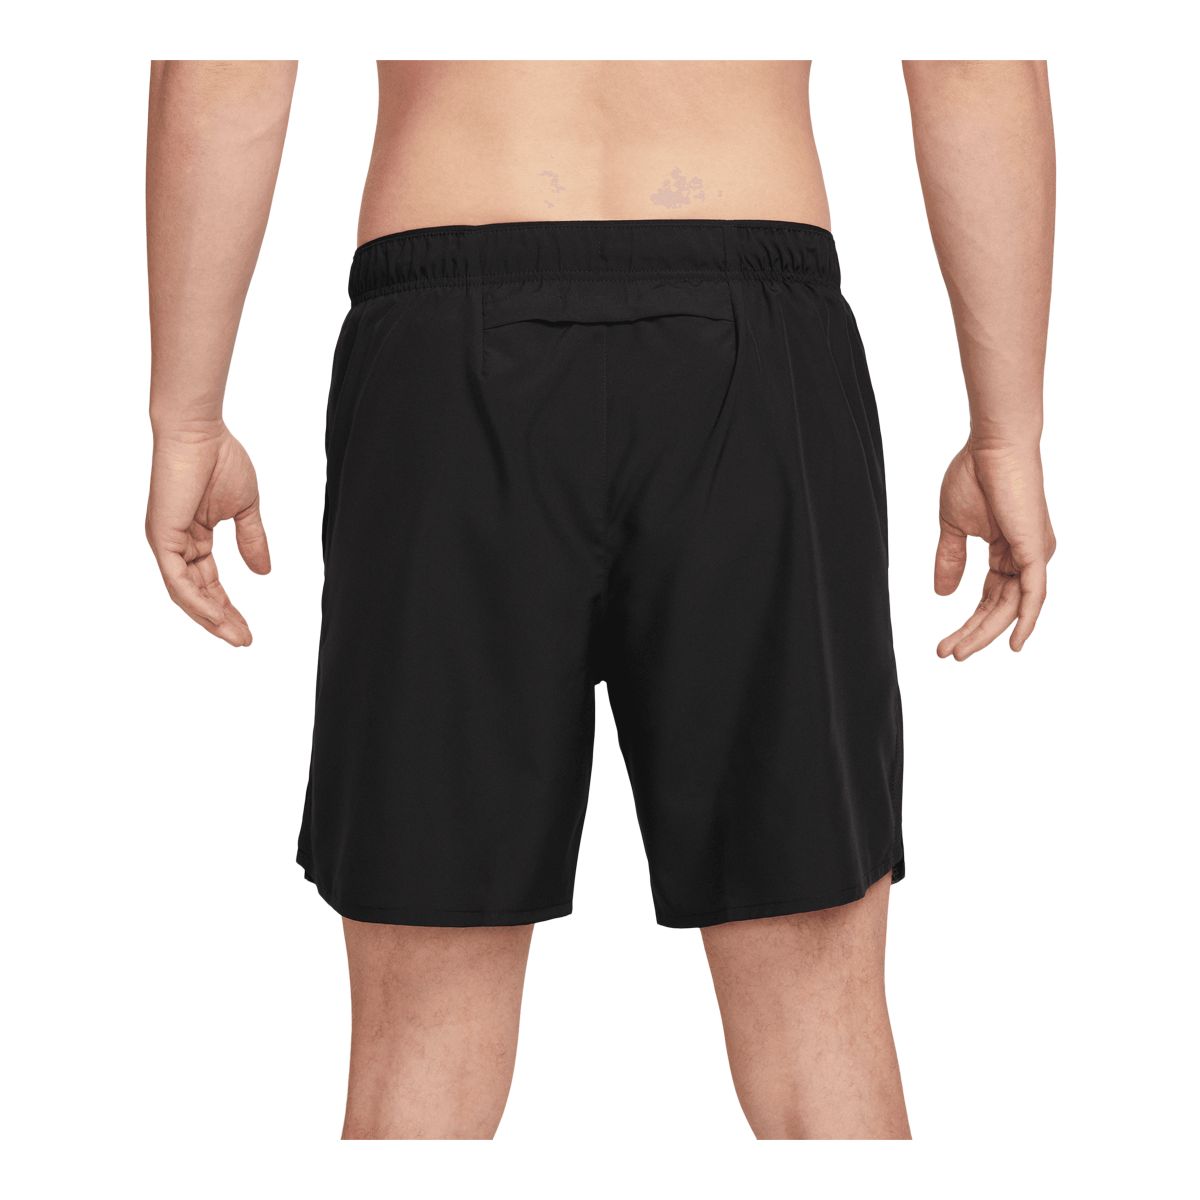 Nike Men's Challenger 2 7 Inch Brief Shorts | Sportchek